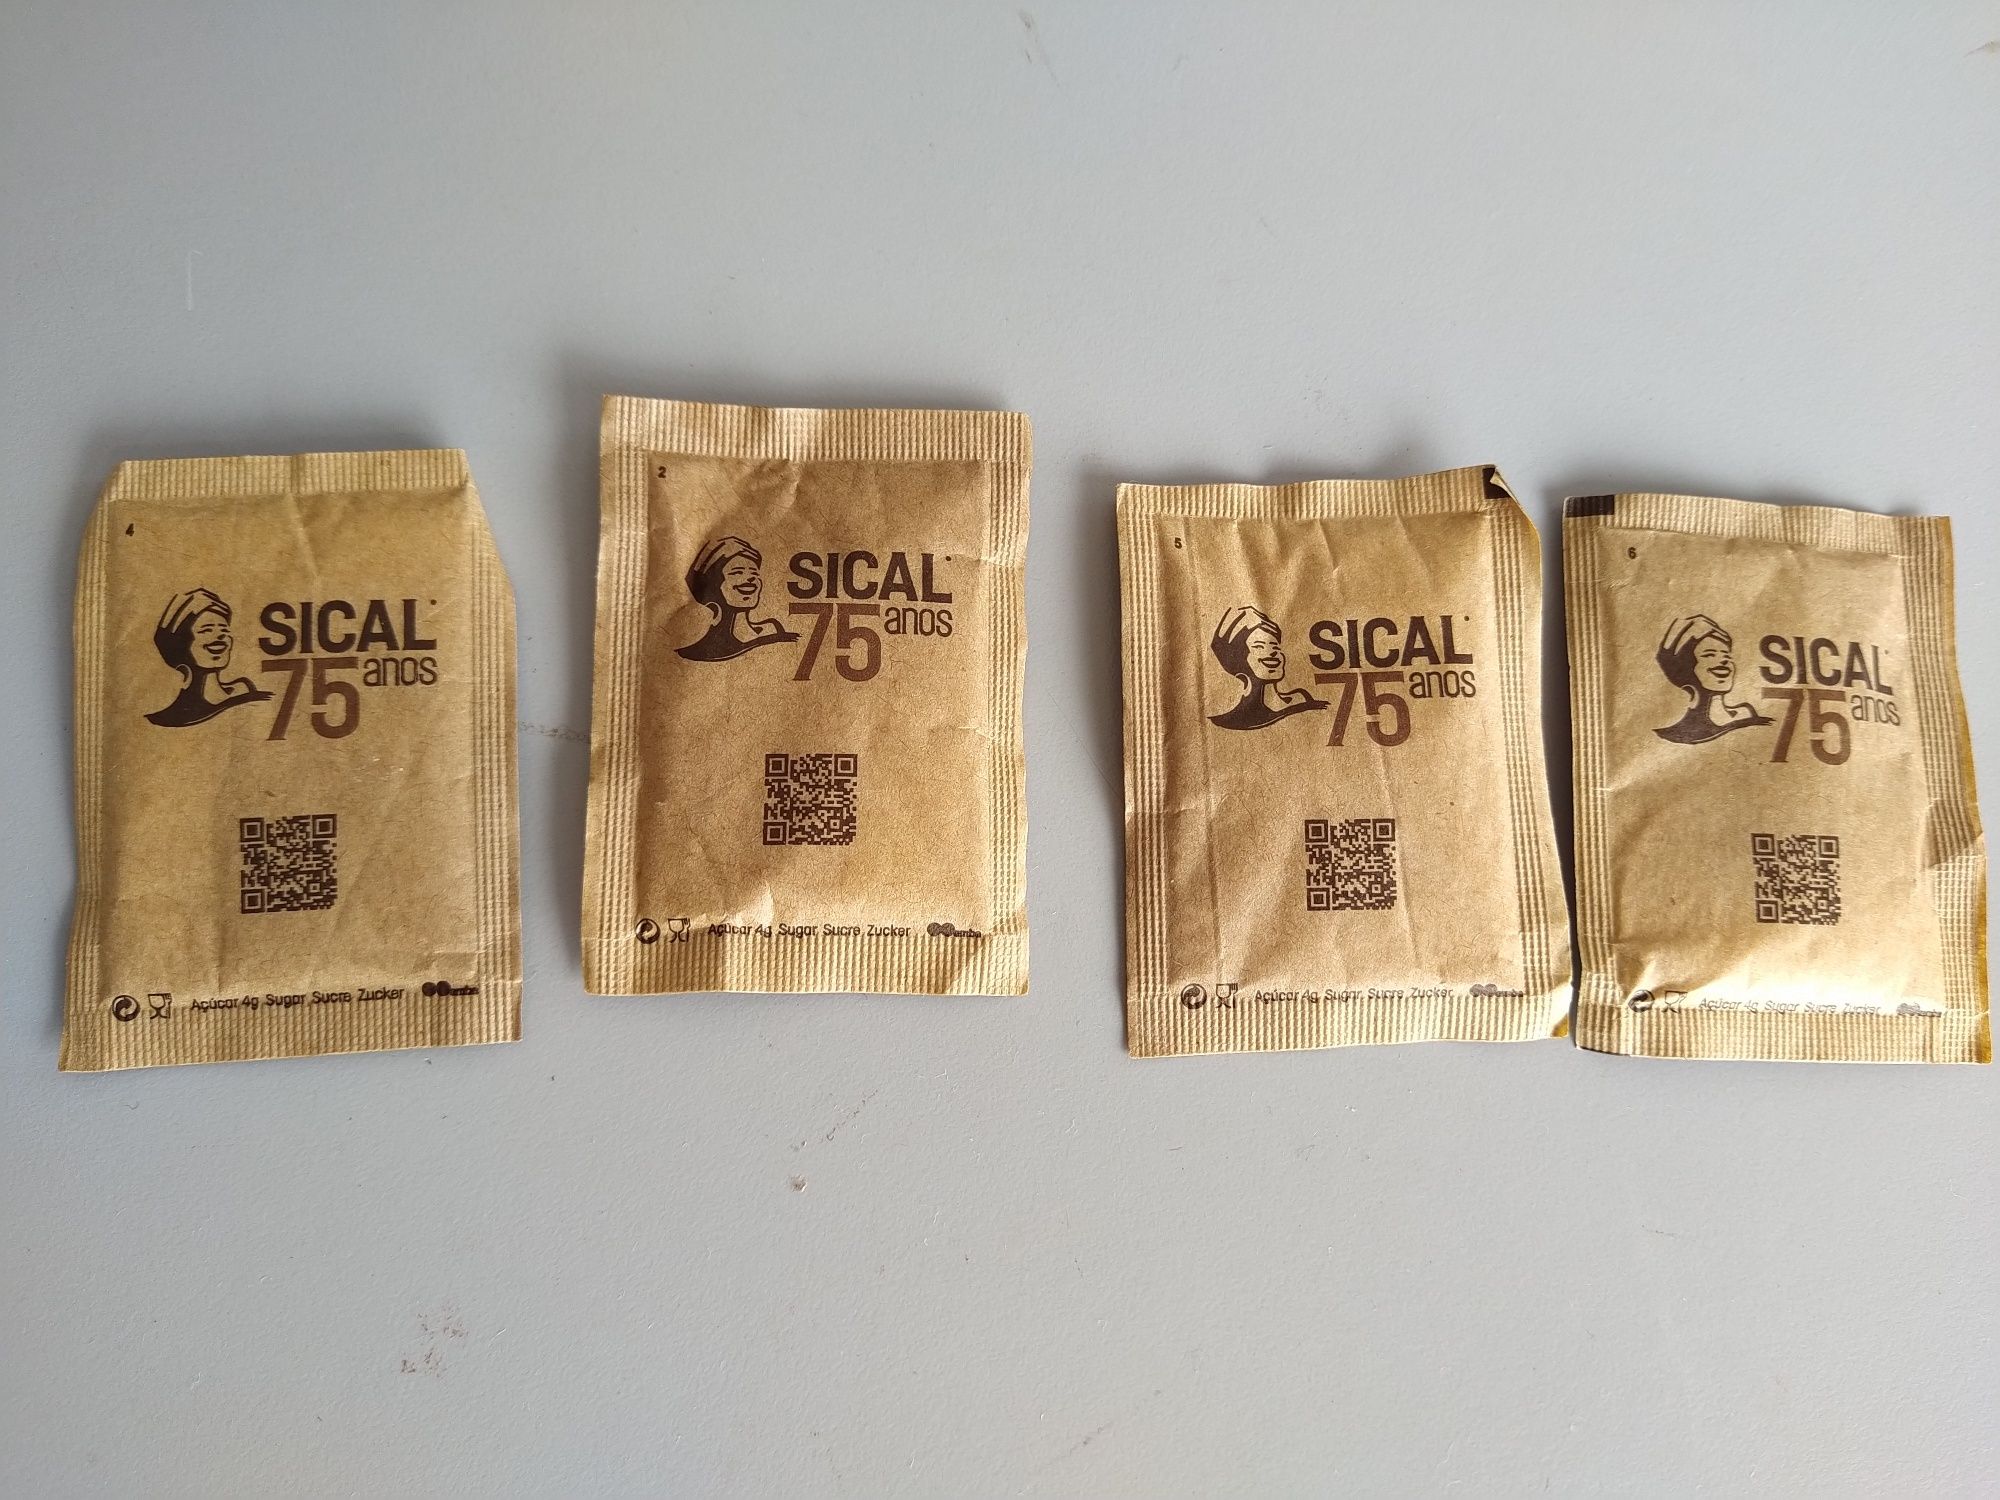 Pacotes de açúcar da Sical - Comemoração dos 75 anos